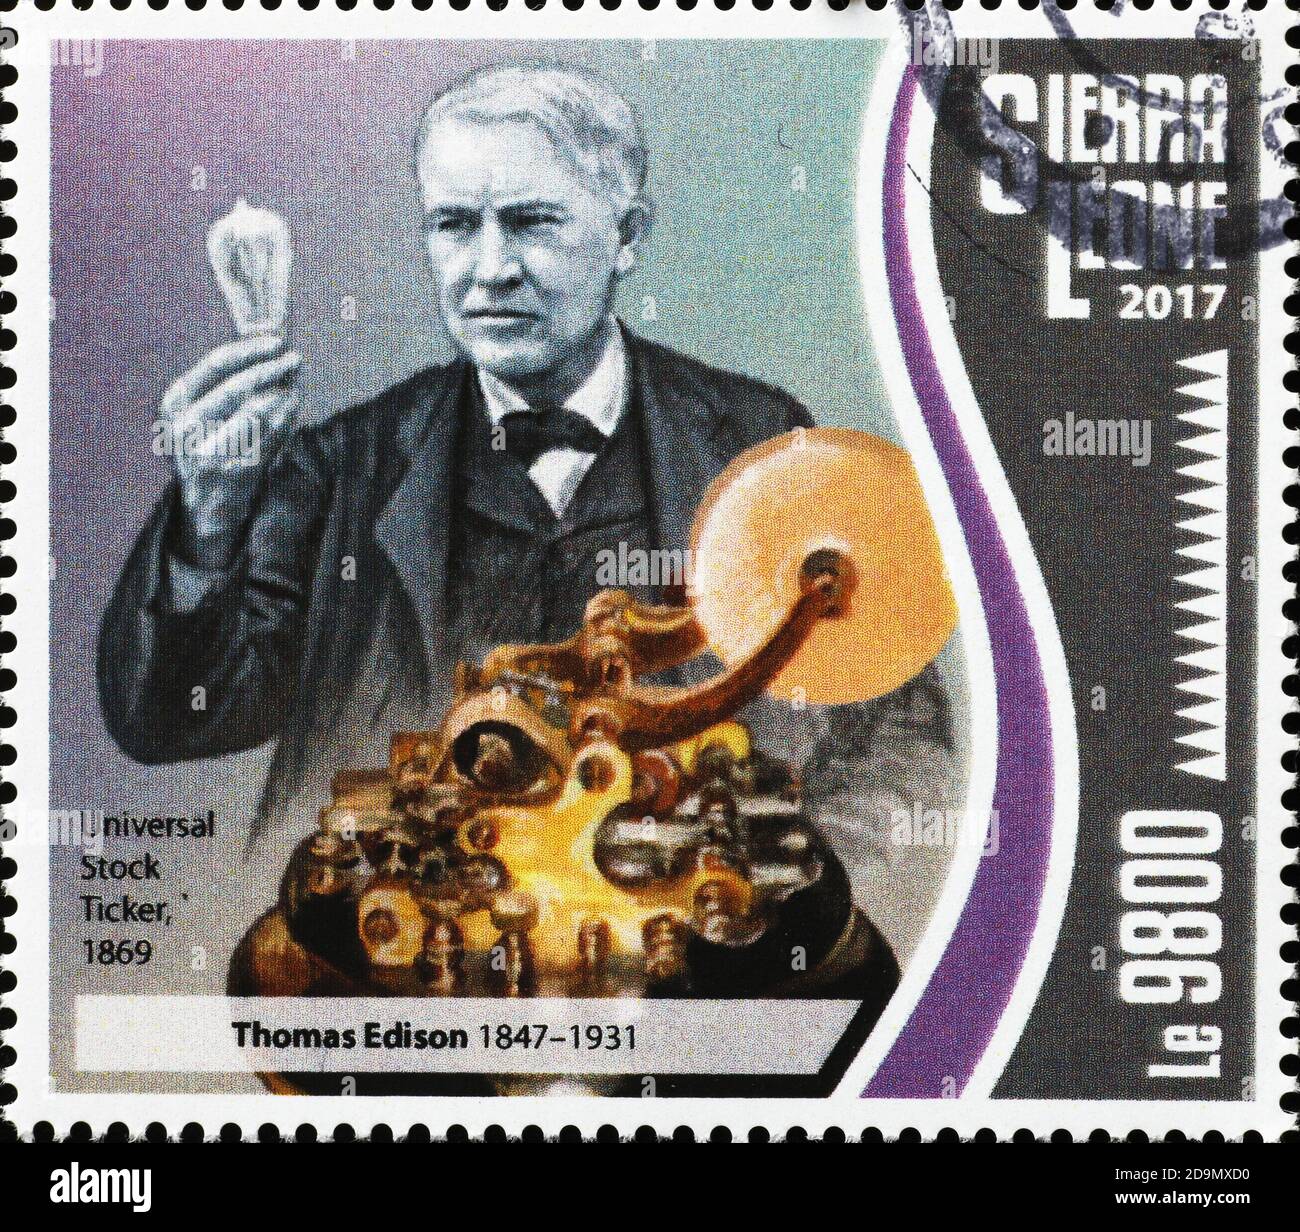 Invention de l'Universal stock ticker par thomas Edison sur timbre Banque D'Images